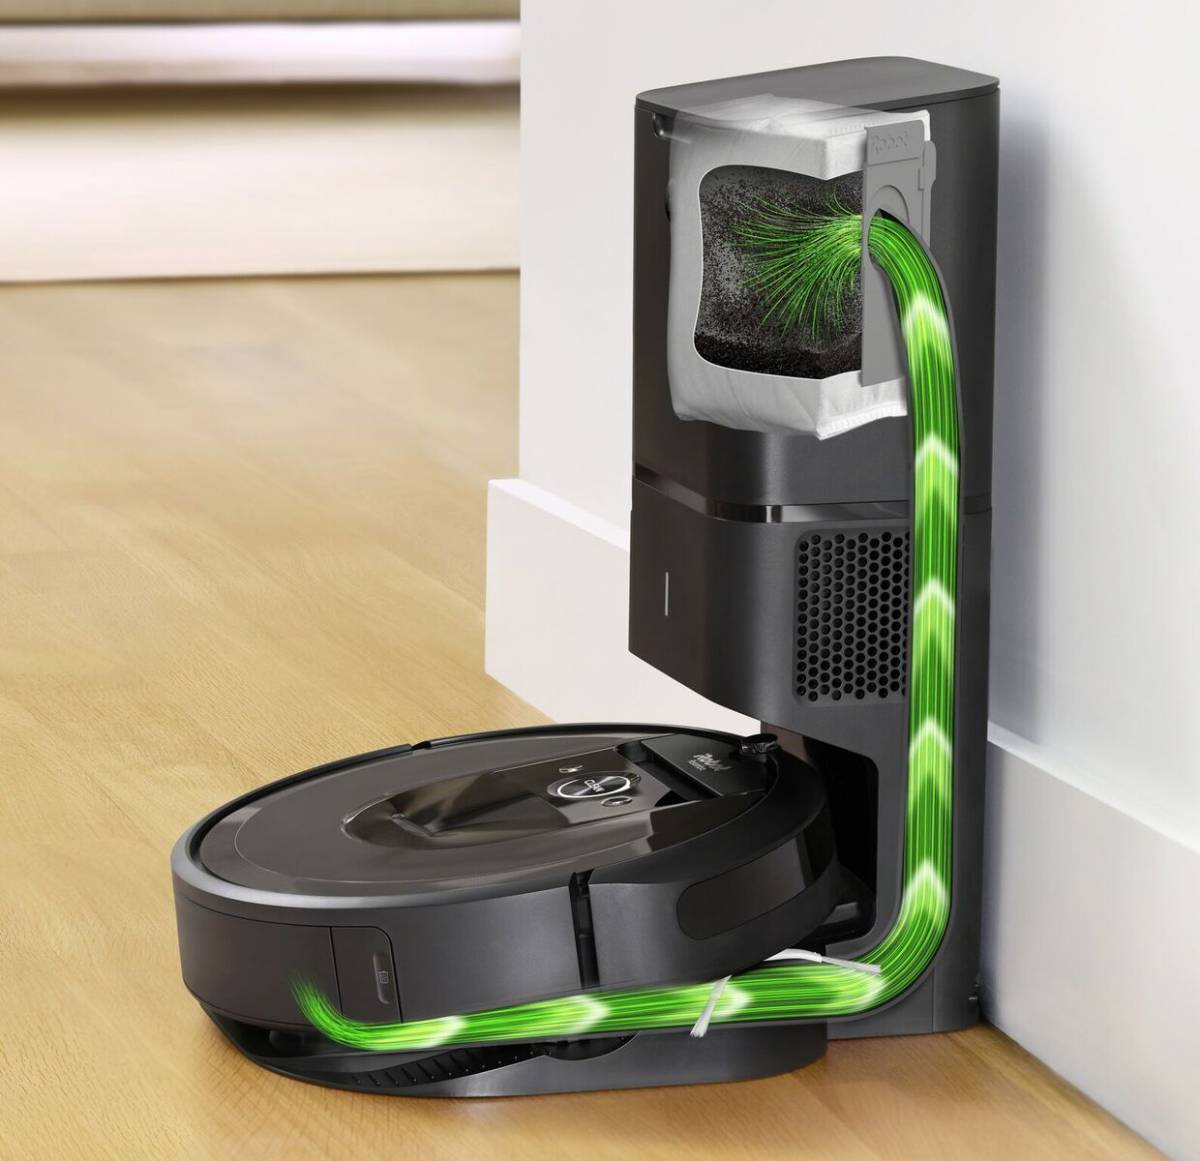 iRobot Roomba i7 +: grundlig rengöring och automatisk tömning 7